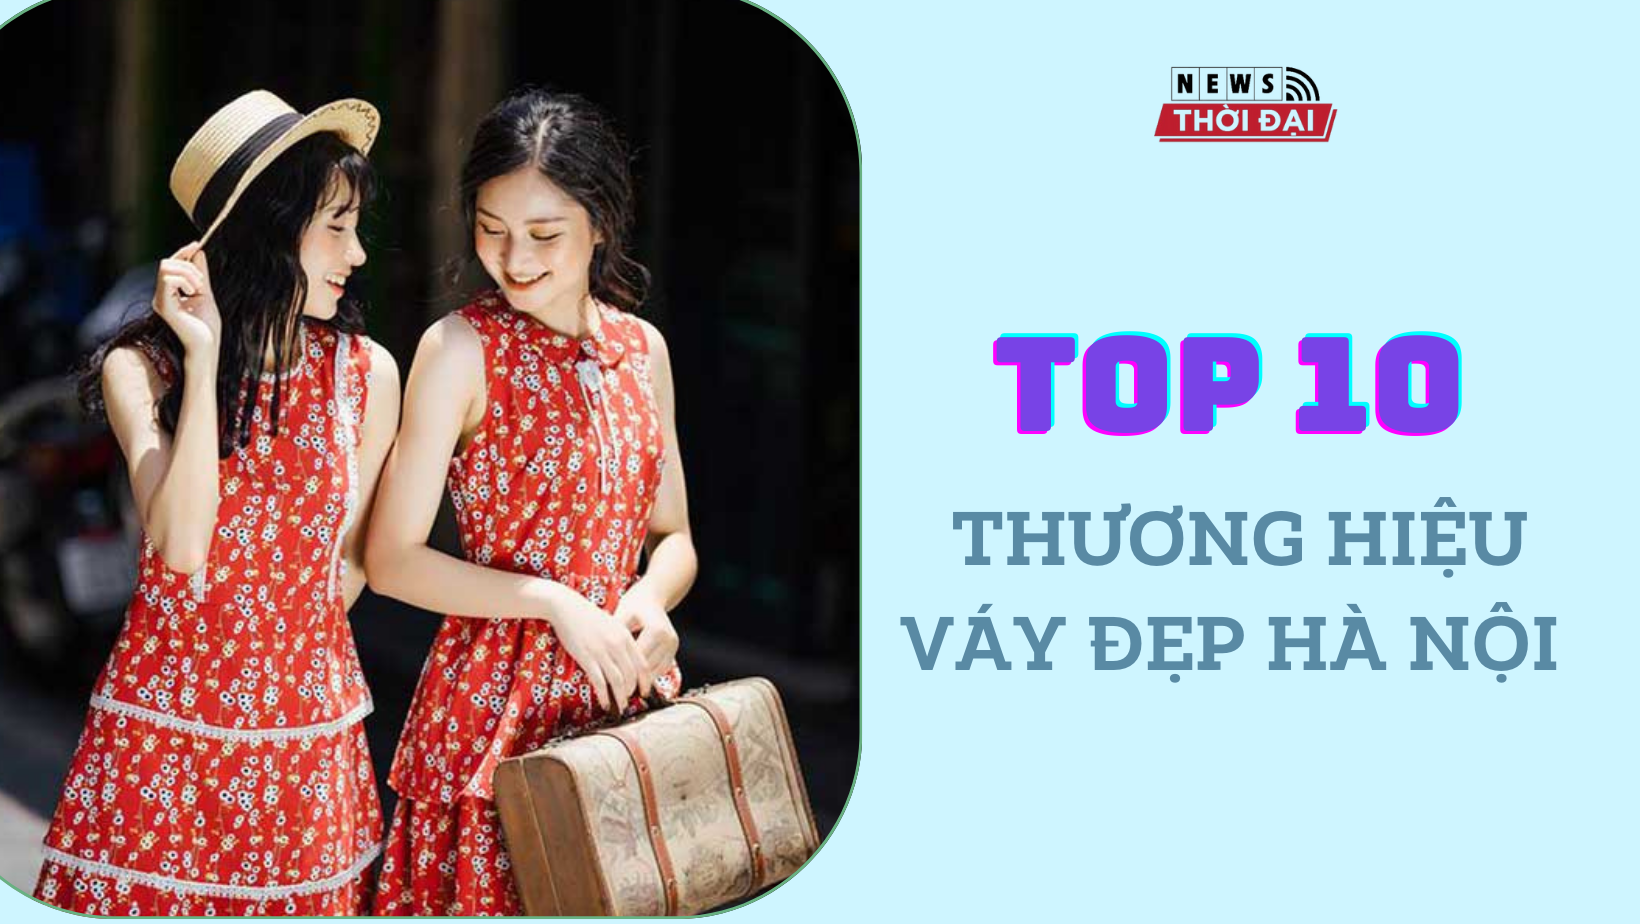 Top 10 Thương hiệu váy đẹp Hà Nội: Khám phá những ngôi nhà thời trang tại thủ đô